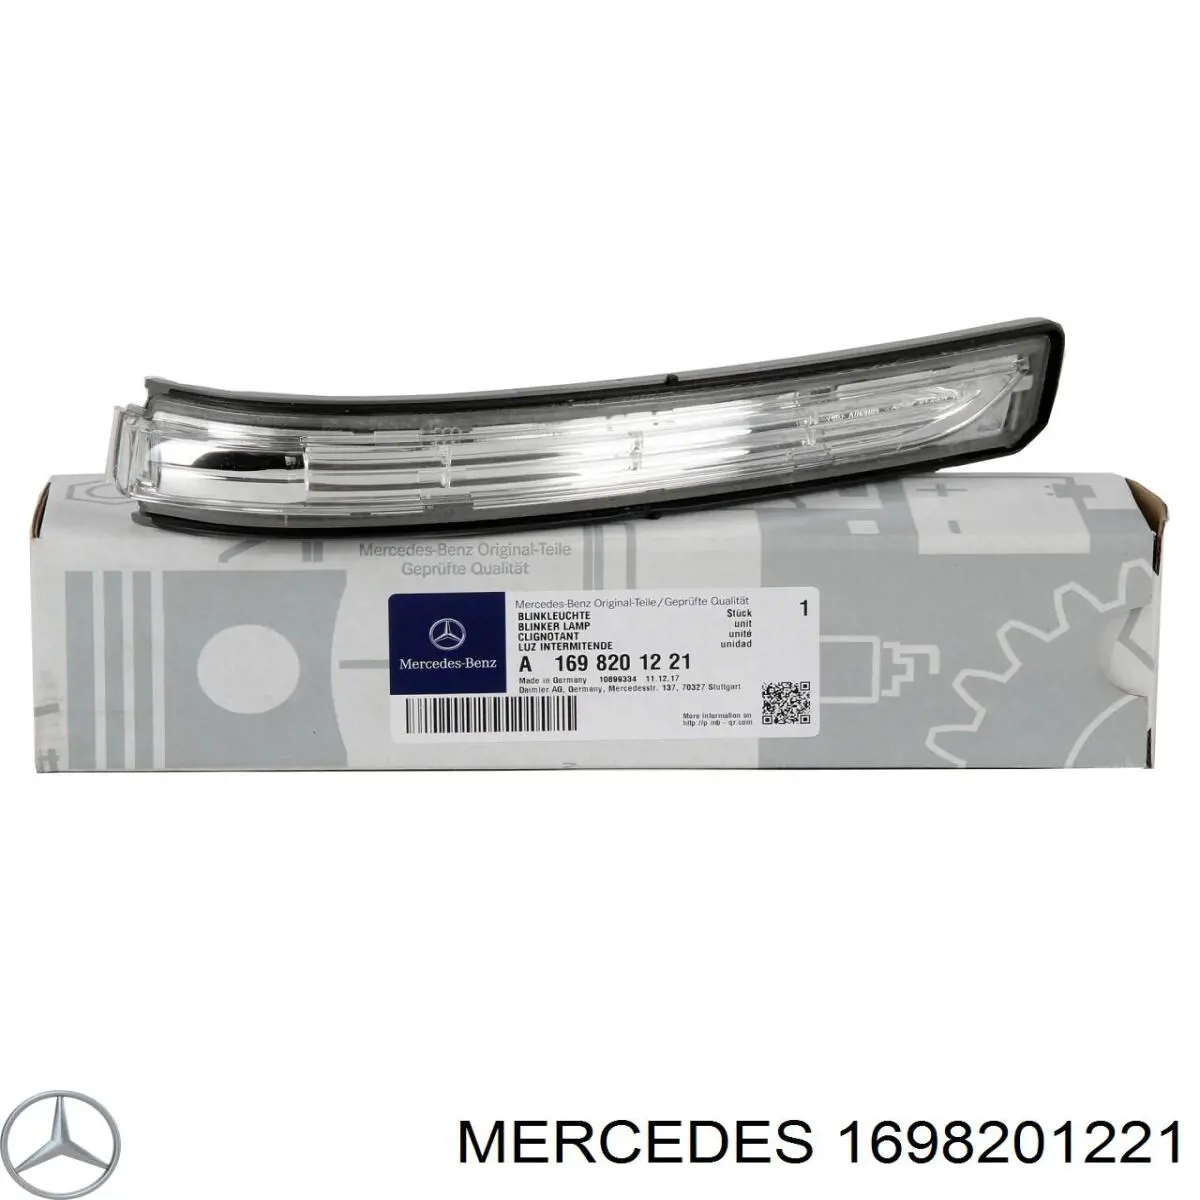 1698201221 Mercedes pisca-pisca de espelho direito